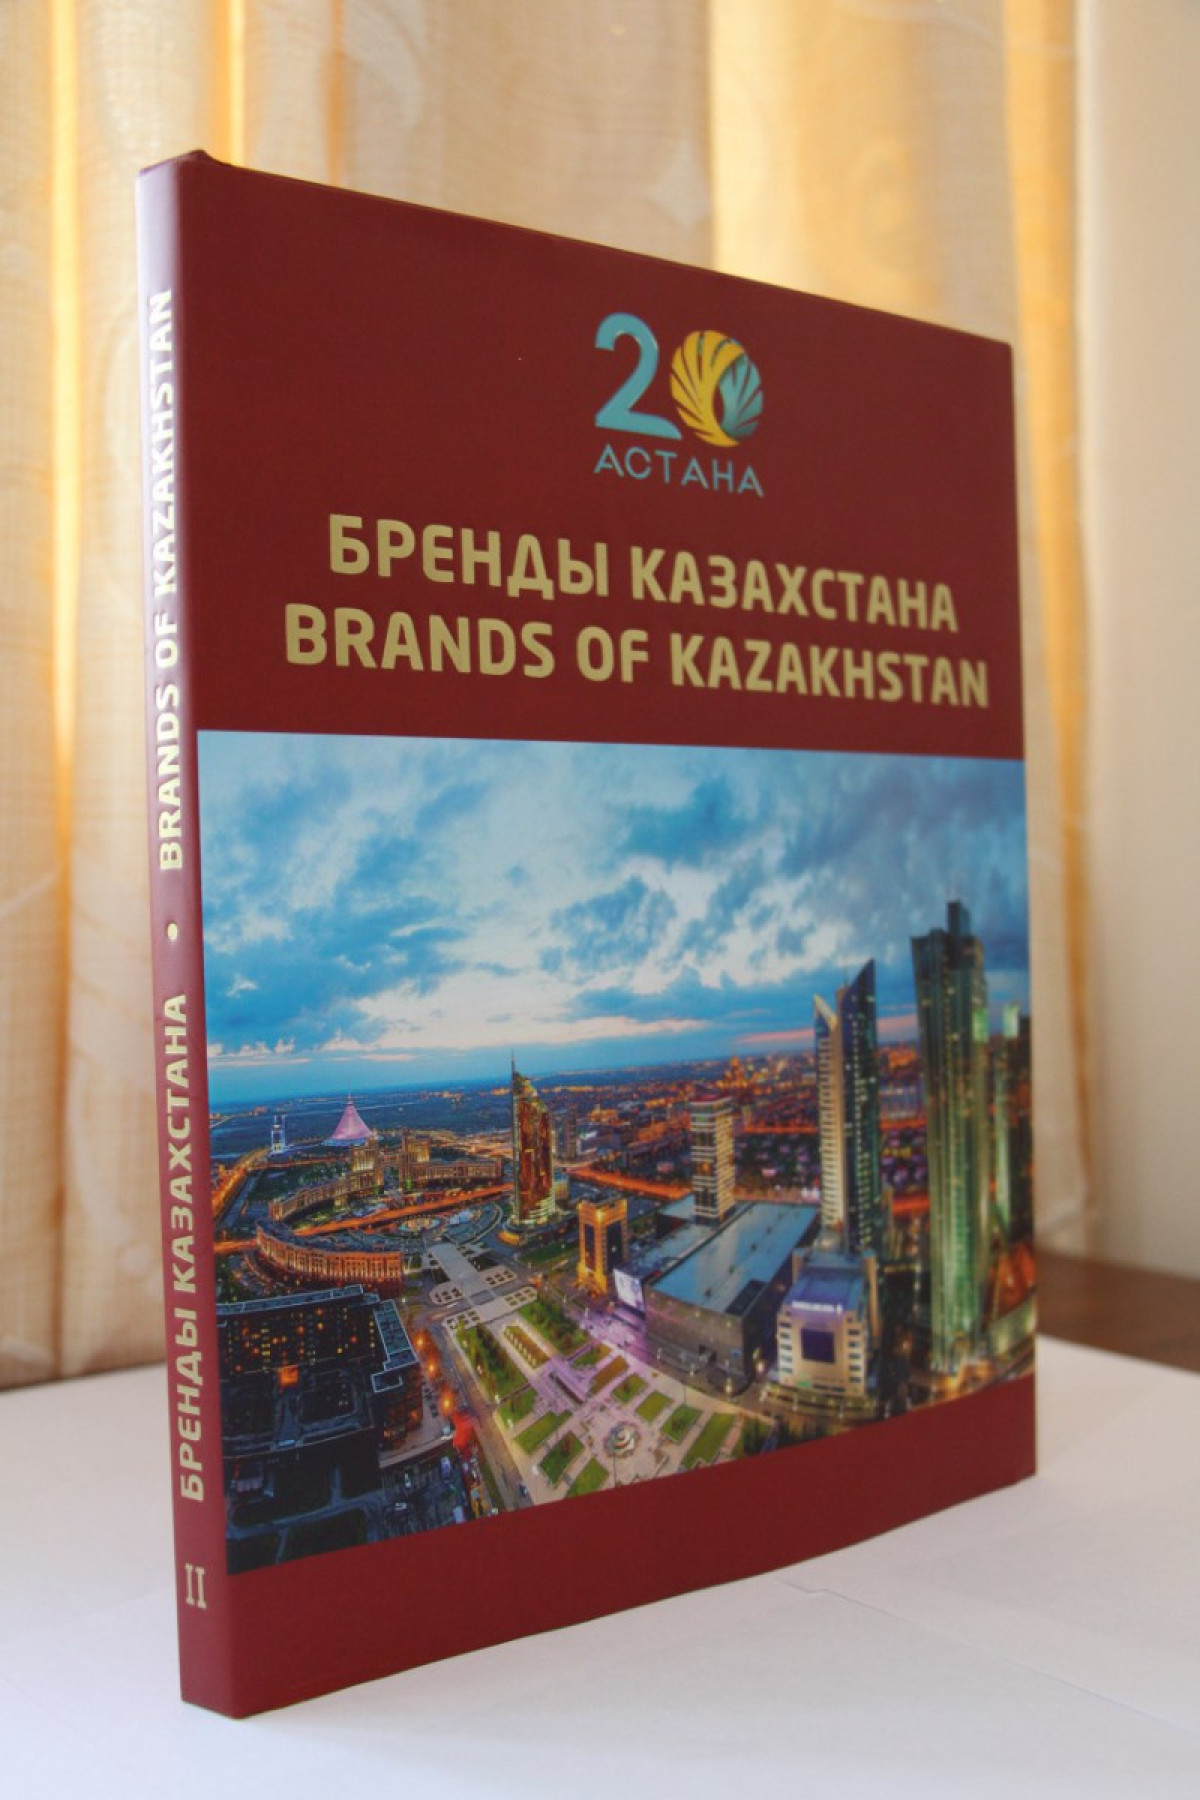 Brands of Kazakhstan: о достижениях бизнеса страны узнают за рубежом